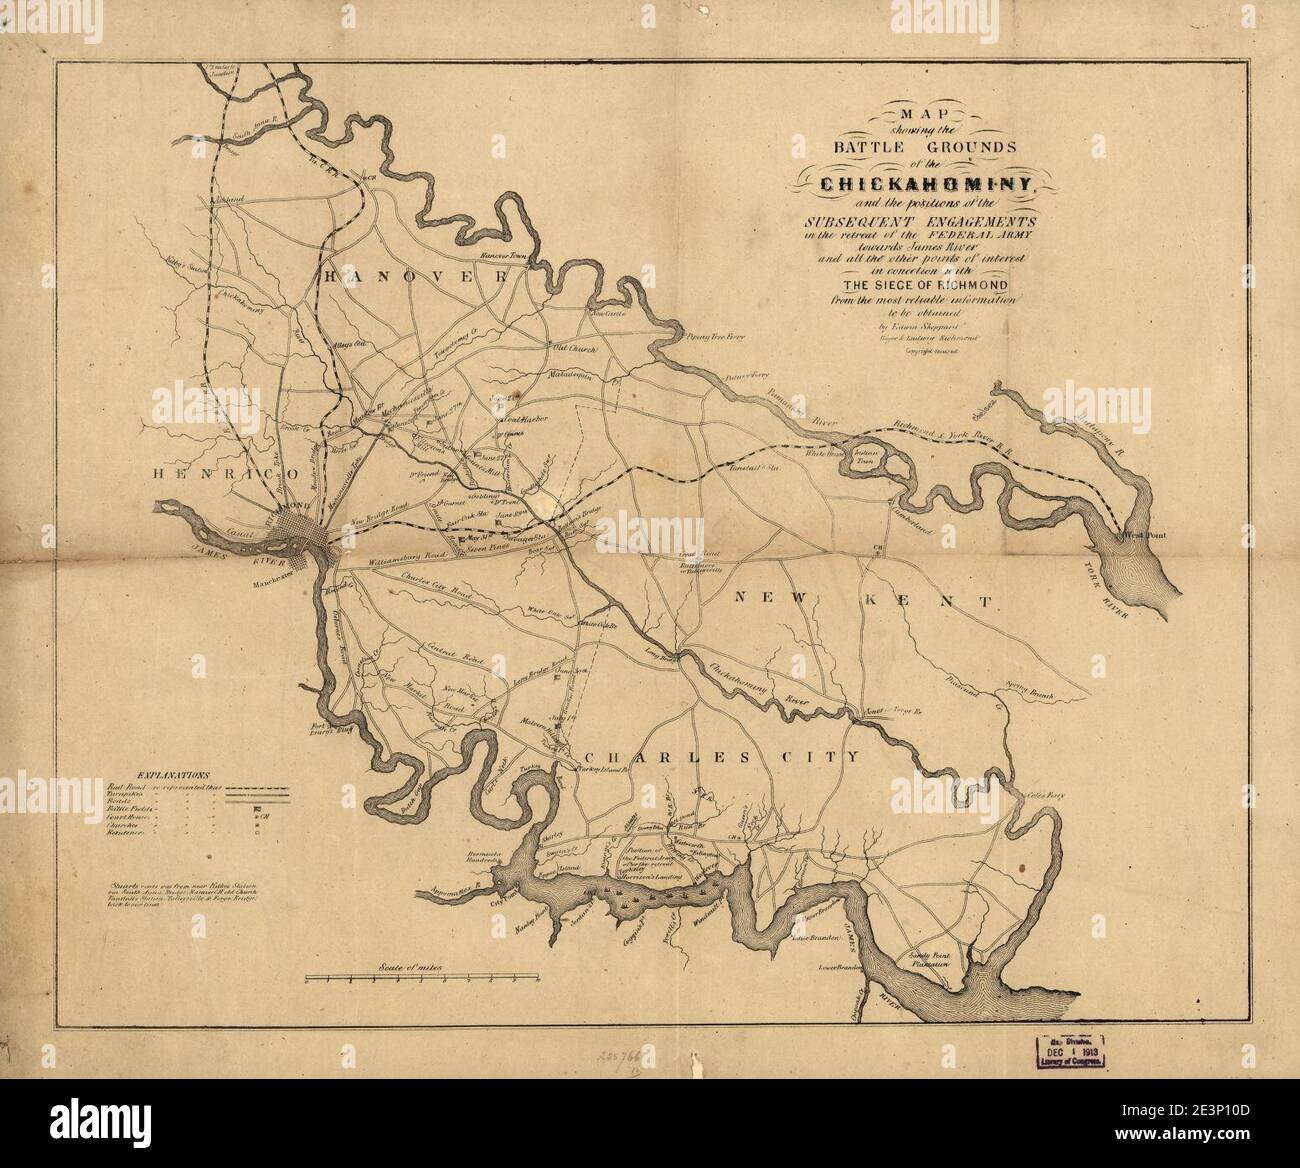 Mappa che mostra i campi di battaglia del Chickahominy, e le posizioni dei successivi impegni nel ritiro dell'esercito federale verso James River e tutti gli altri punti di interesse Foto Stock